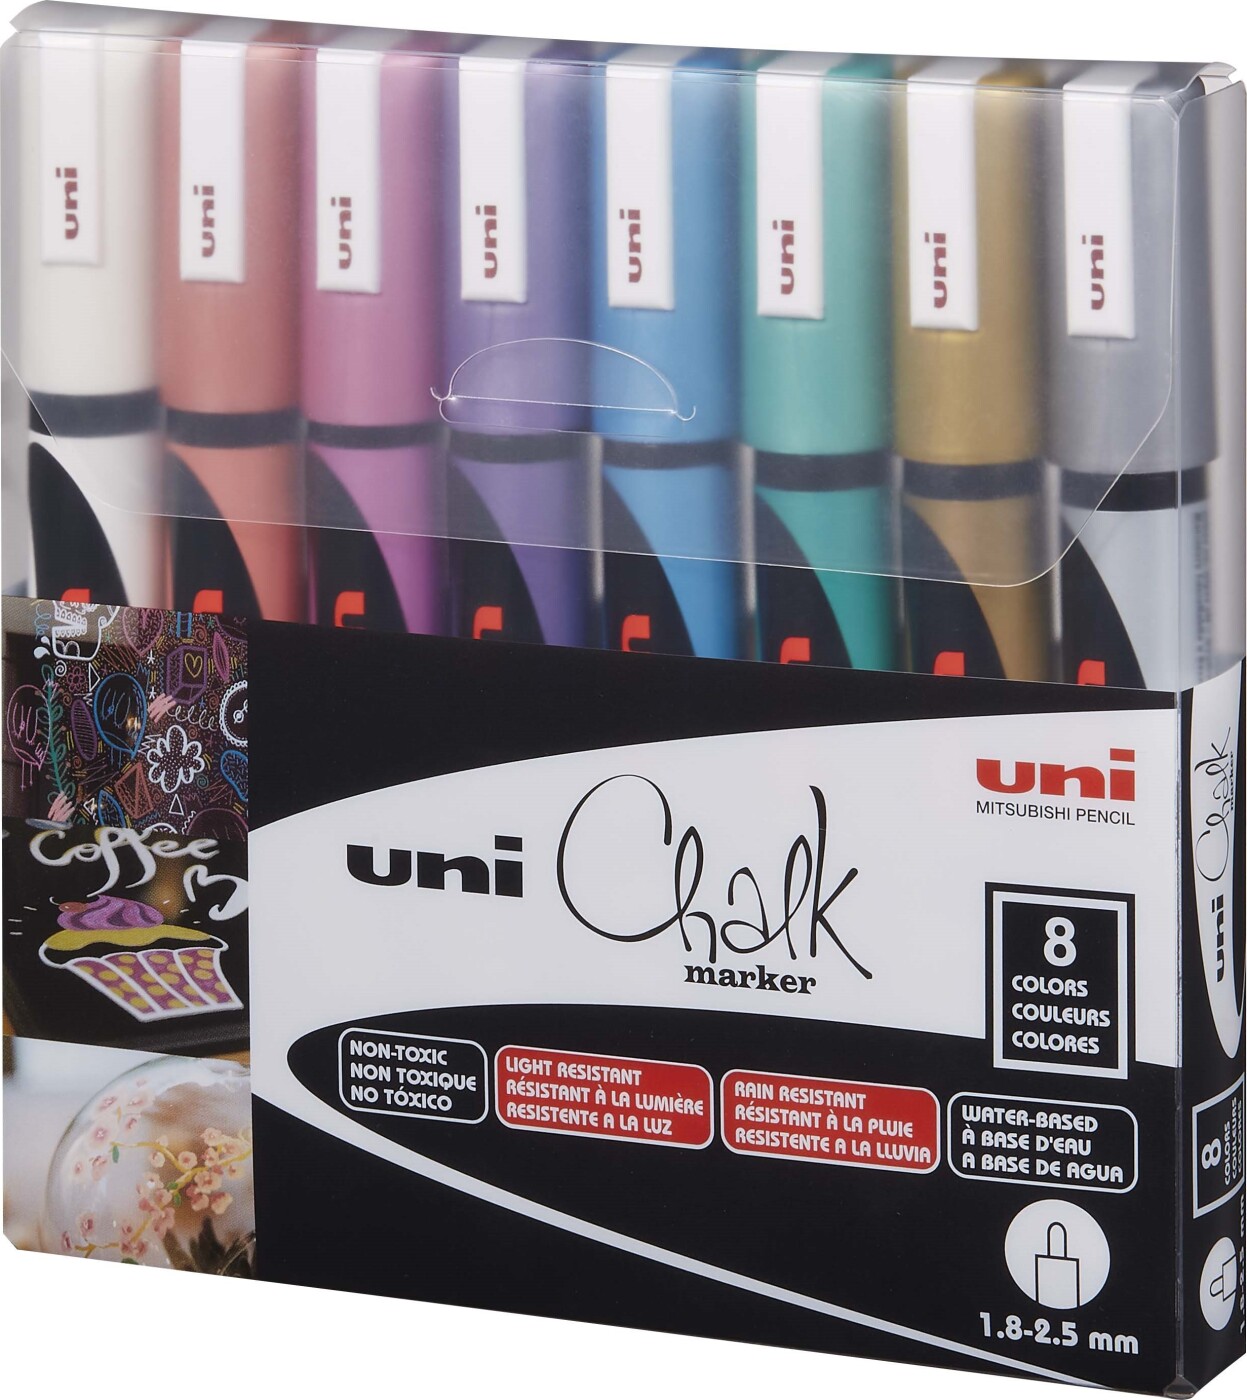 Billede af Uni - Chalk Markers - Tavle Tusser - Metallisk - 8 Farver